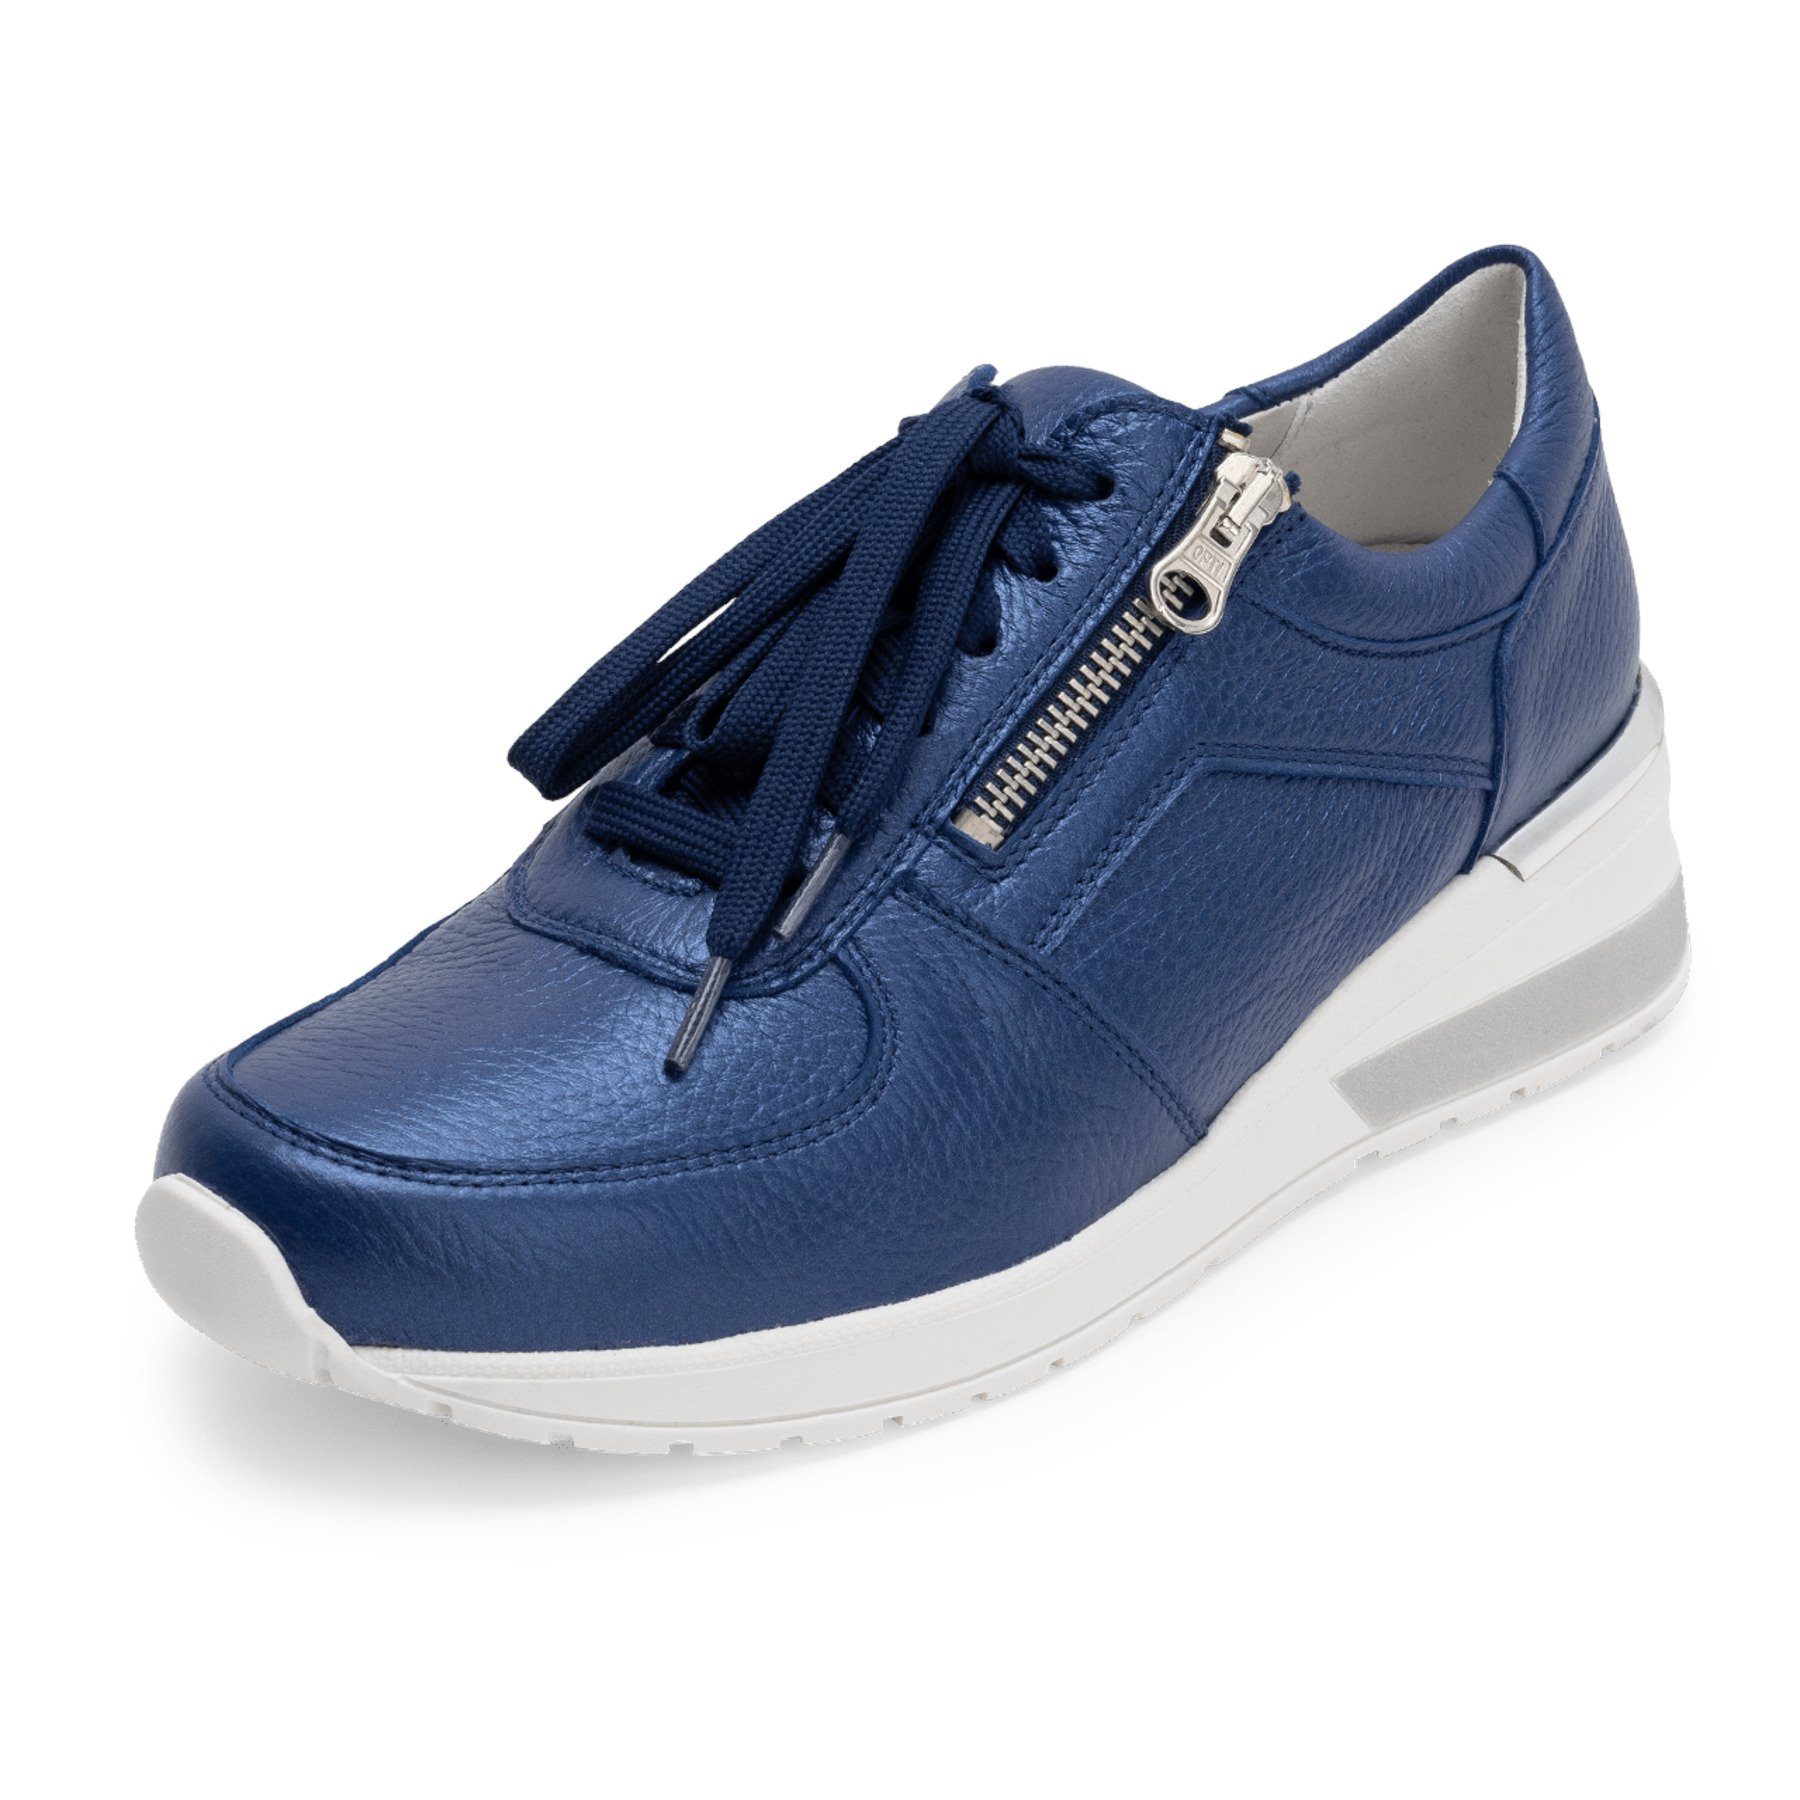 Damen Sneaker in blau online kaufen | OTTO